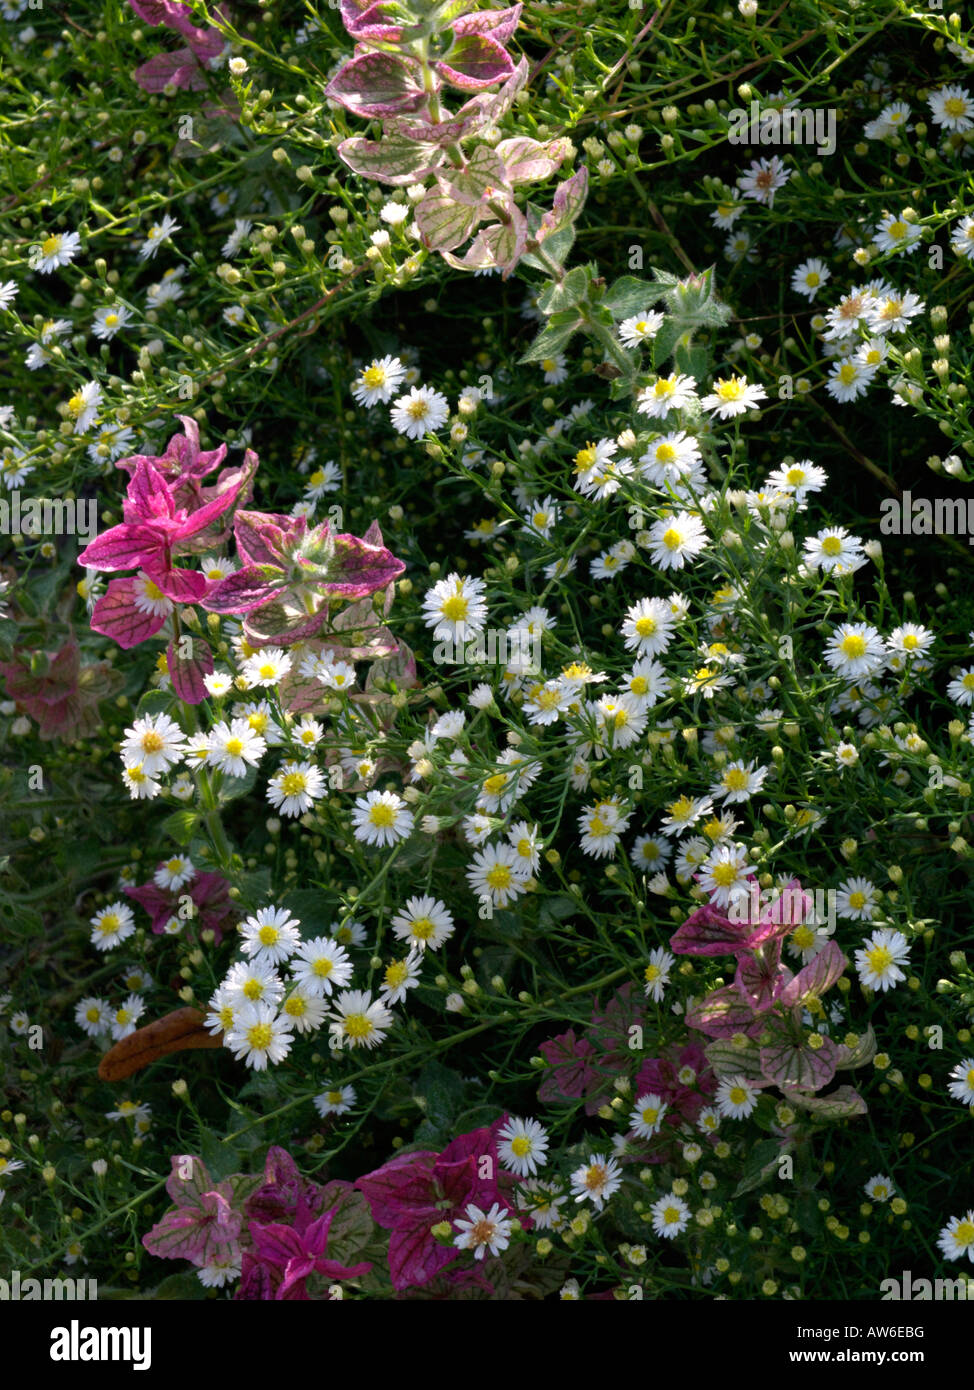 Aspen fleabane (Erigeron speciosus 'Sommerneuschnee') Stock Photo